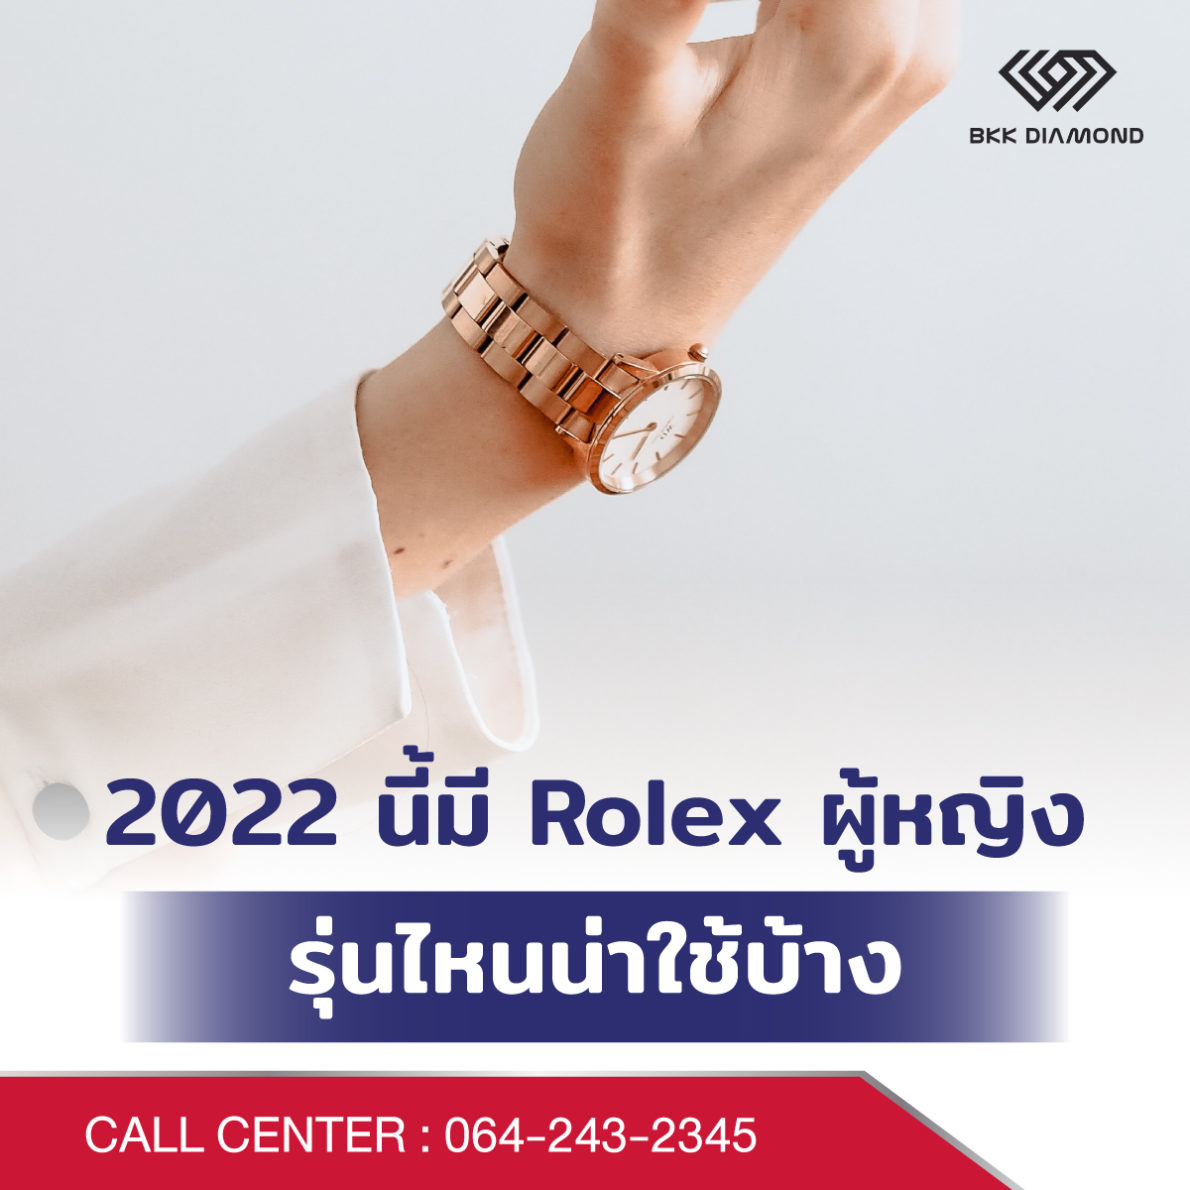 2022 นี้มี Rolex ผู้หญิงรุ่นไหนน่าใช้บ้าง